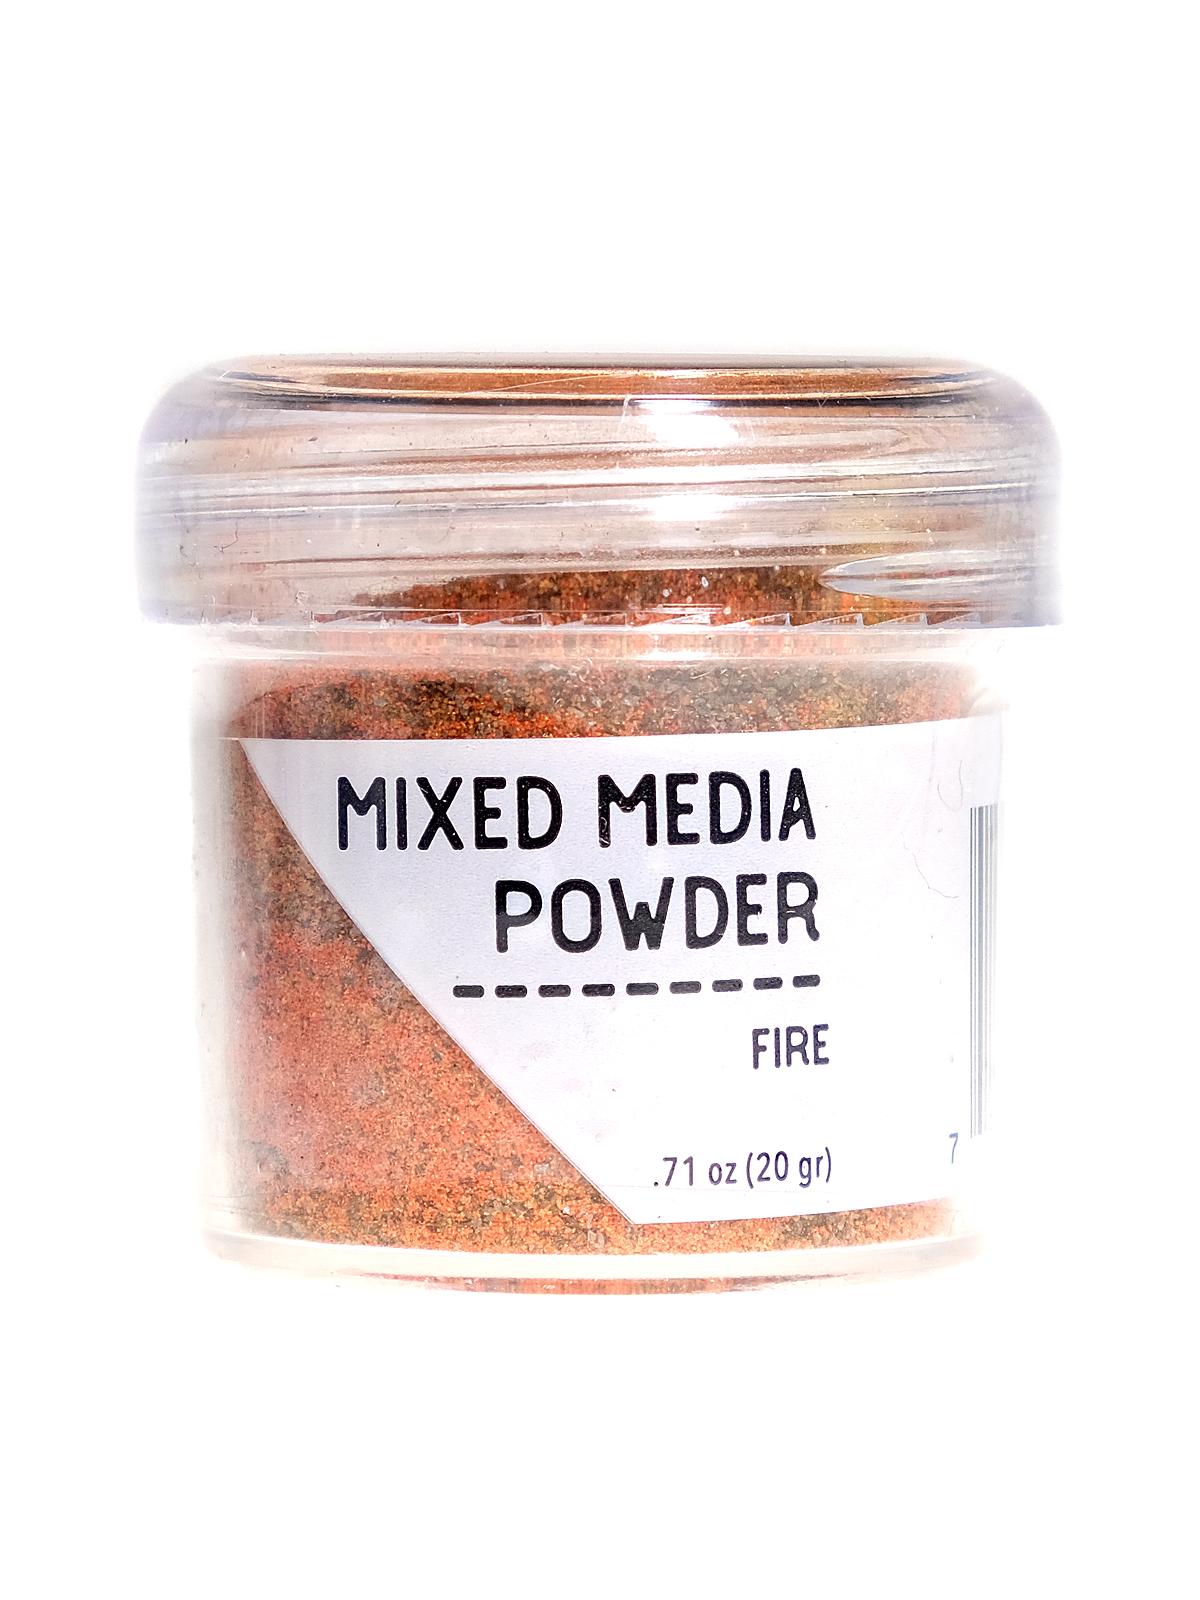 Mixed Media Powders Fire 20 G Jar